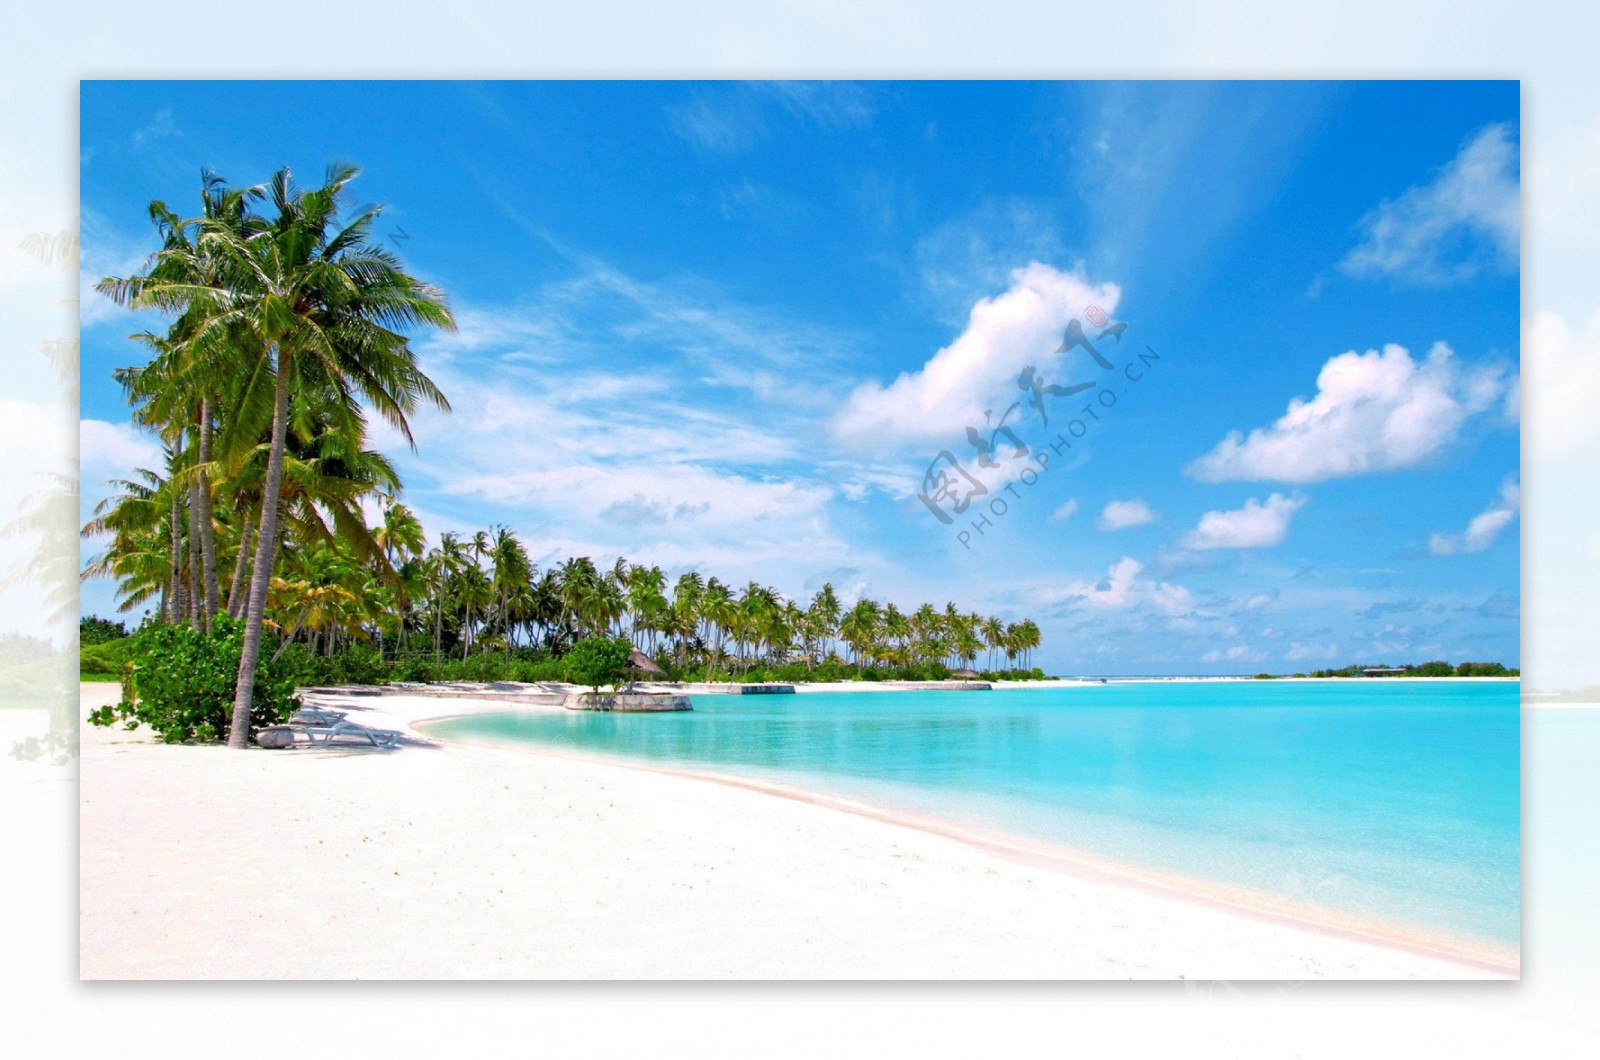 美丽的大海沙滩椰树自然风景高清图片大全-壁纸图片大全